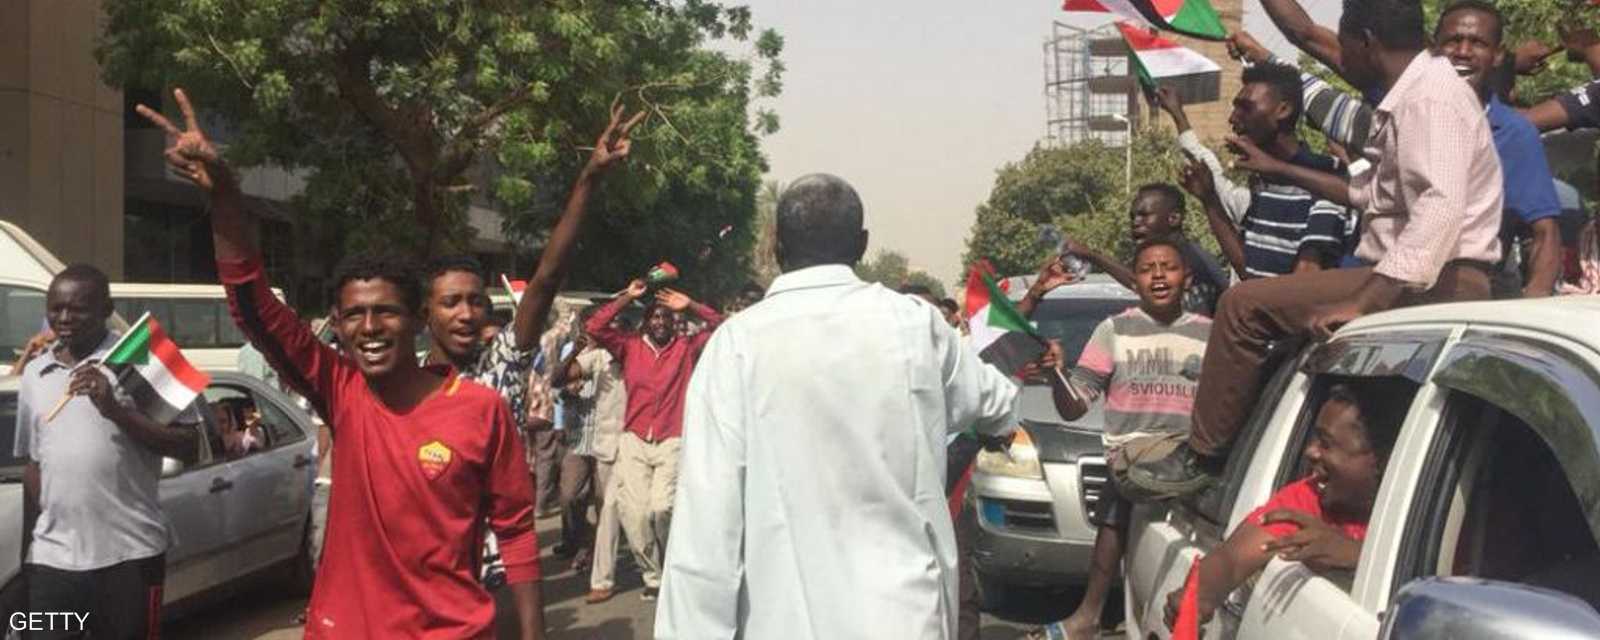 احتجاجات السودان أوقعت عشرات القتلى والمصابين